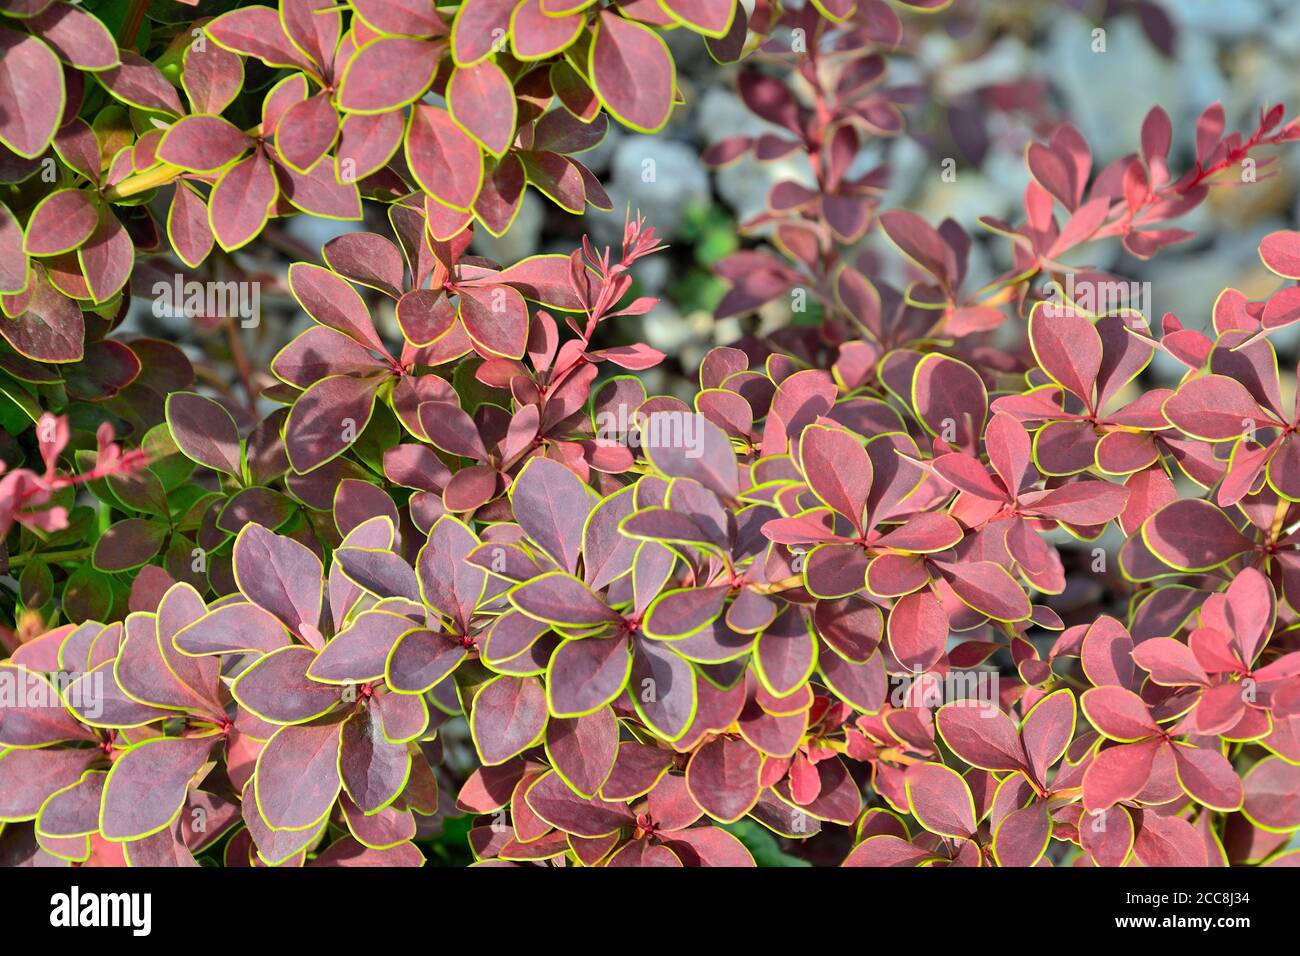 Brindilles de Berberis thunbergii Coronita - plante ornementale colorée pour l'aménagement paysager du jardin. Feuilles violettes aux bords verts jaunes - beauté et fraîcheur Banque D'Images